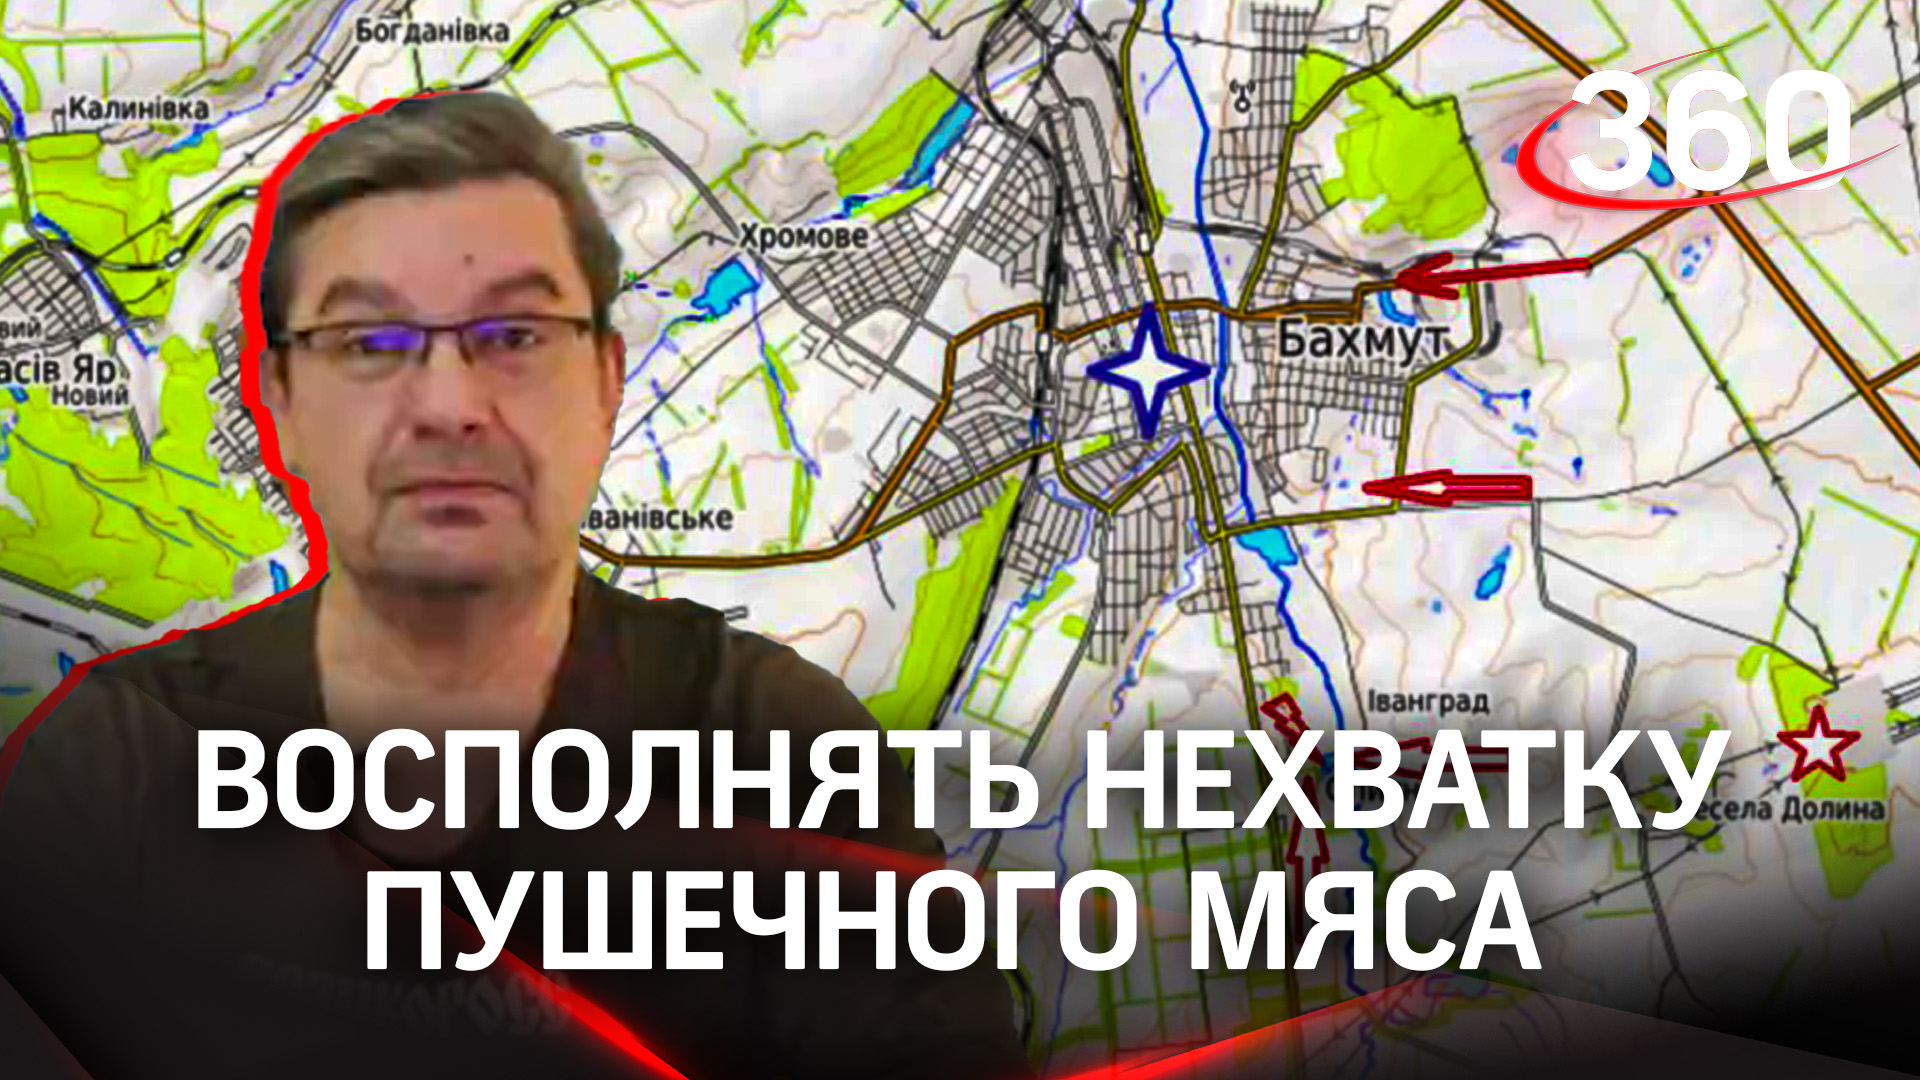 «Восполнять нехватку пушечного мяса Киев не в состоянии»: политолог Михаил Онуфриенко с разбором СВО